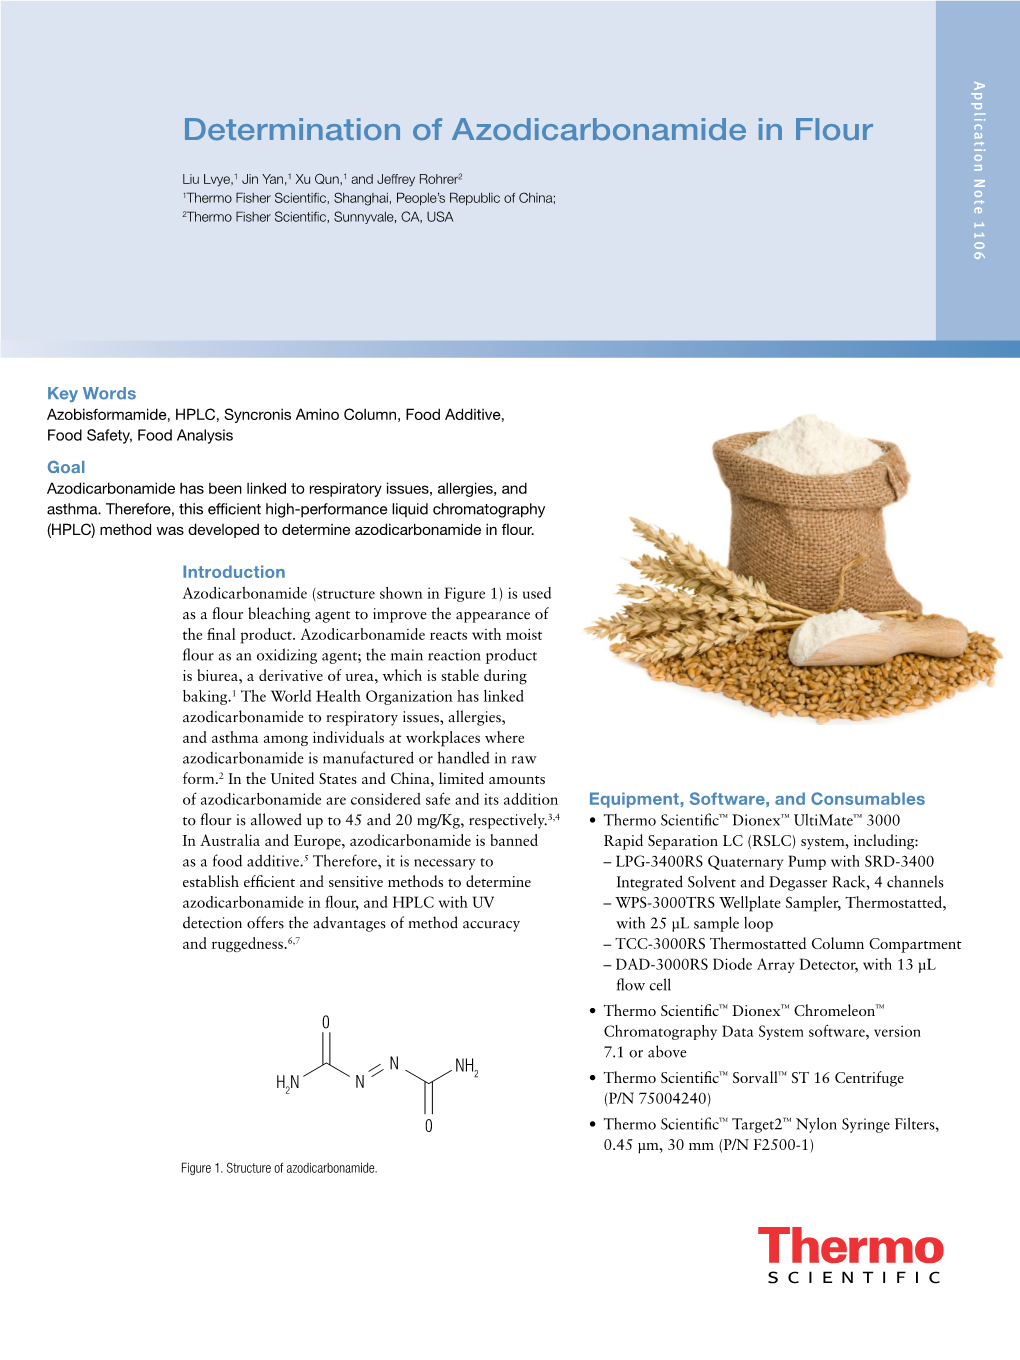 Determination of Azodicarbonamide in Flour